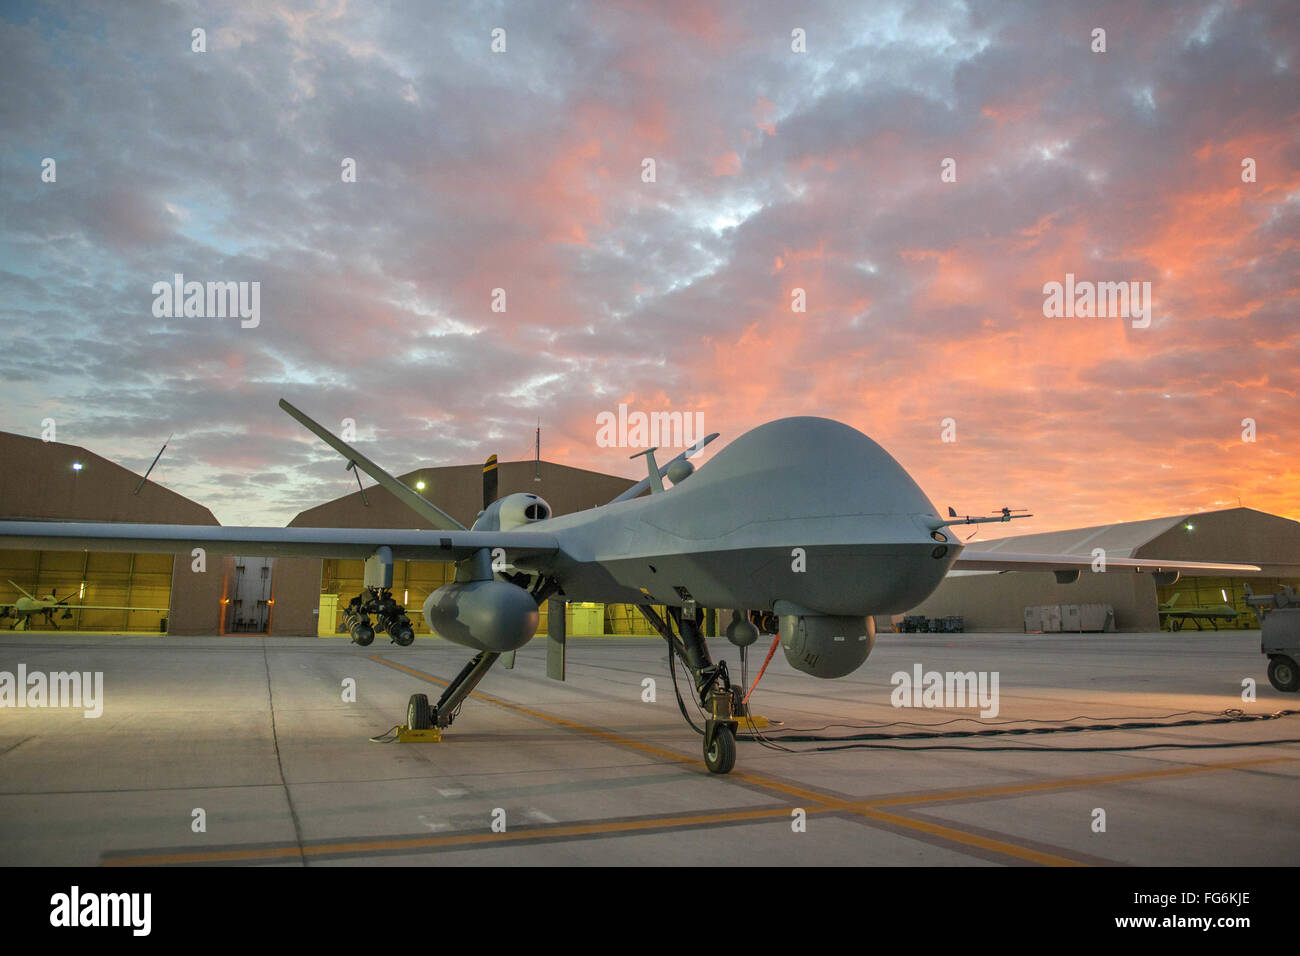 Drone, MQ-9 Reaper military drone Stock Photo